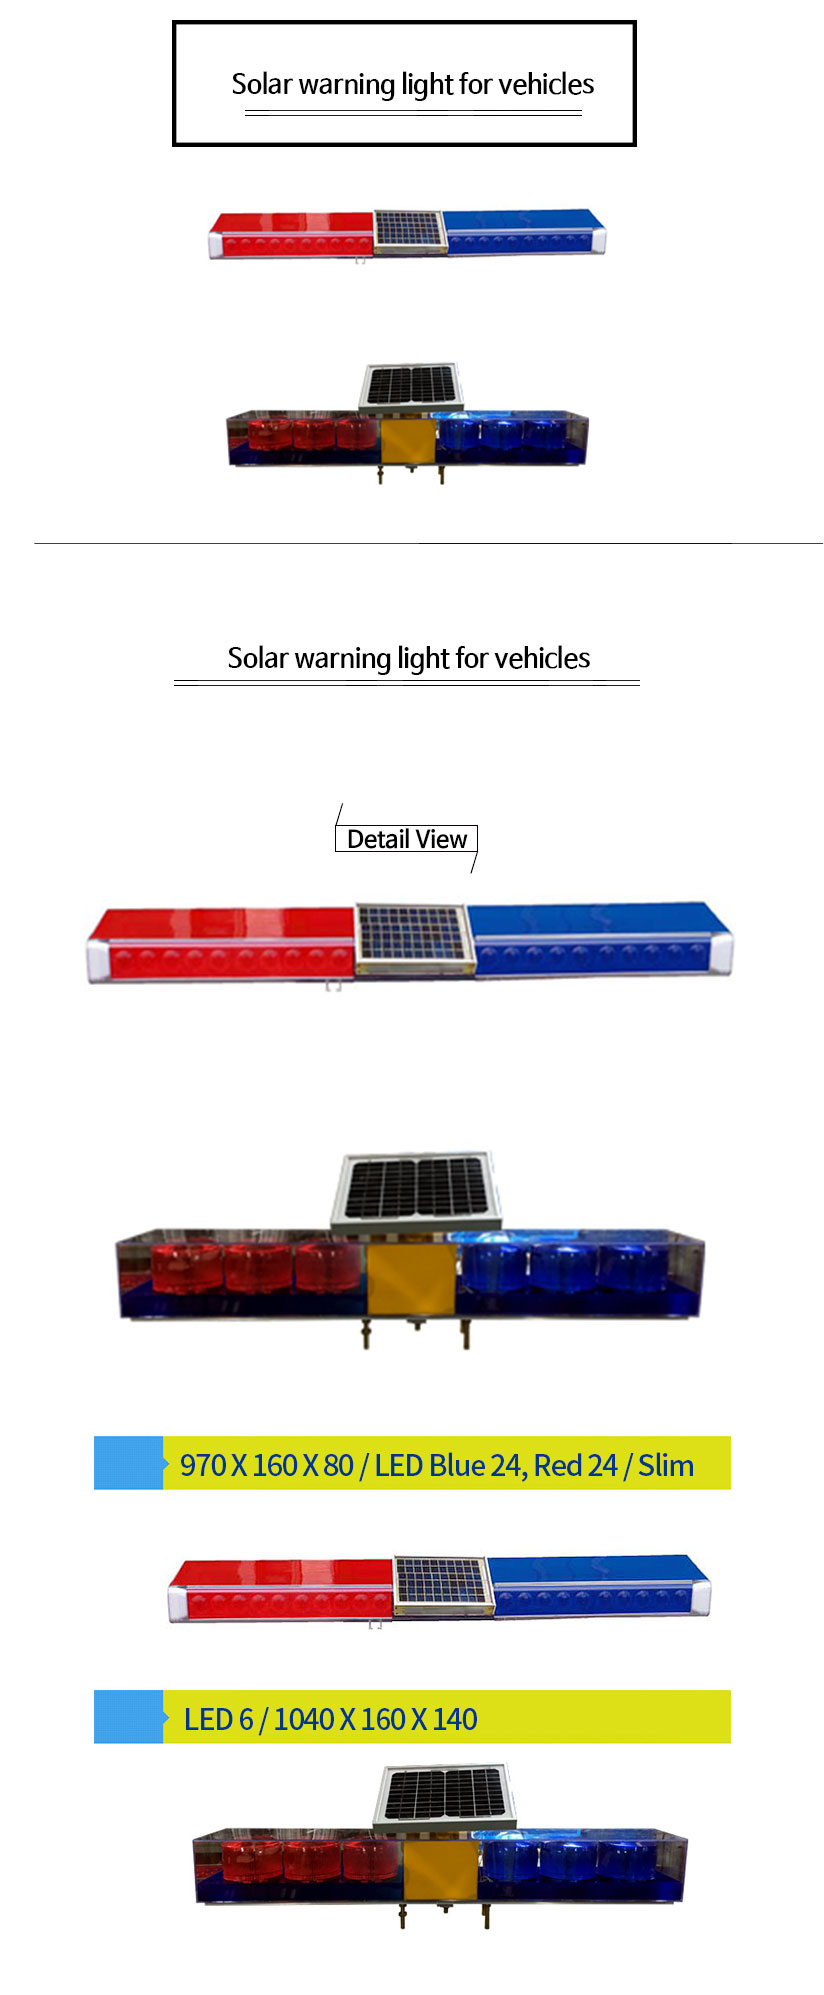 쏠라-장방형경광등(슬림형,6구)Solar-warning-light-for-vehicles.jpg